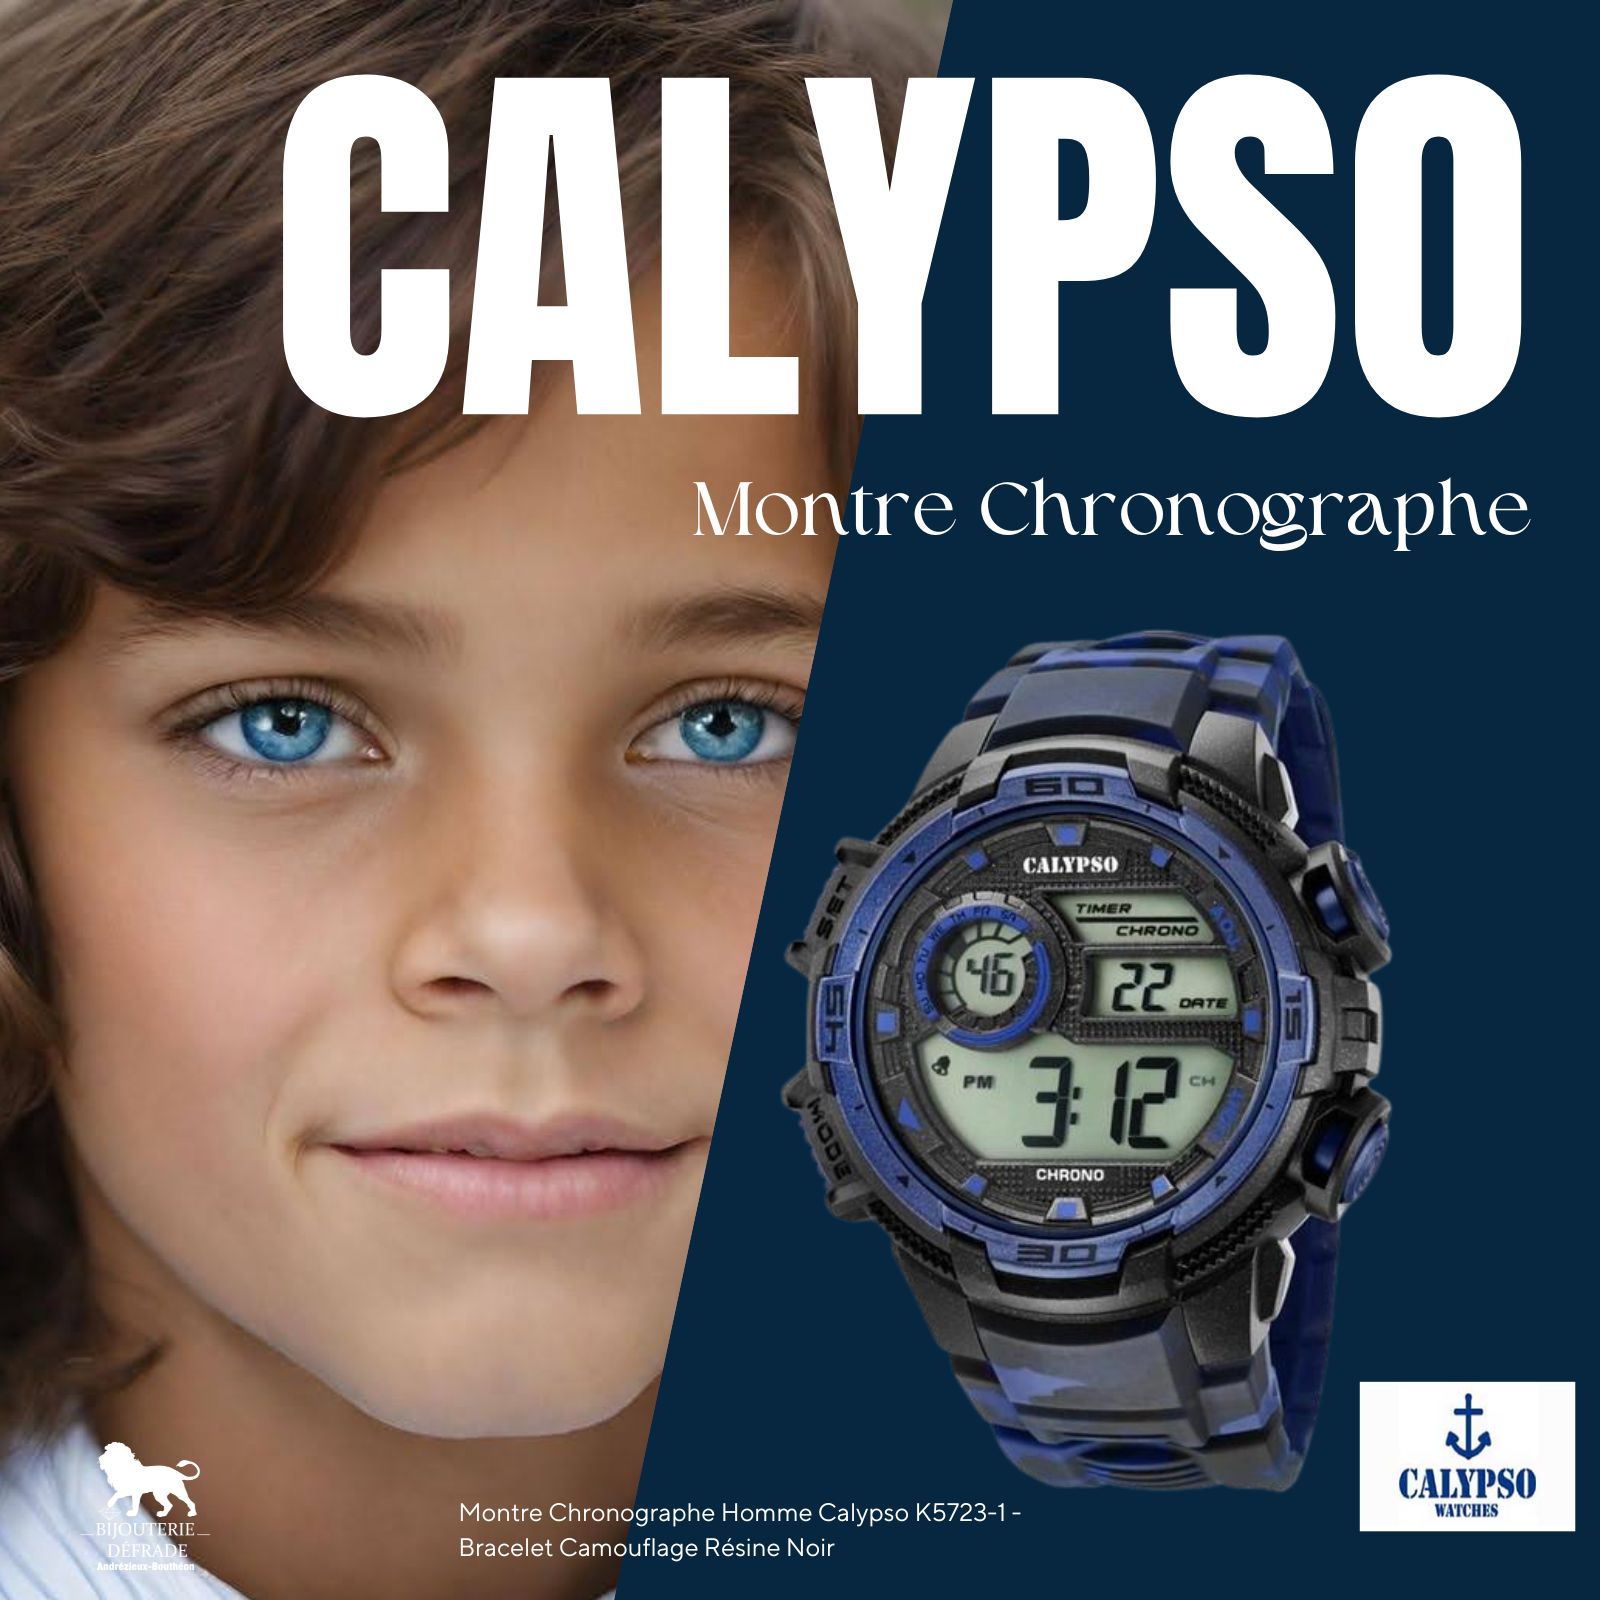 Montre Chronographe Homme Calypso K5723-1 - Bracelet Camouflage Résine Noir